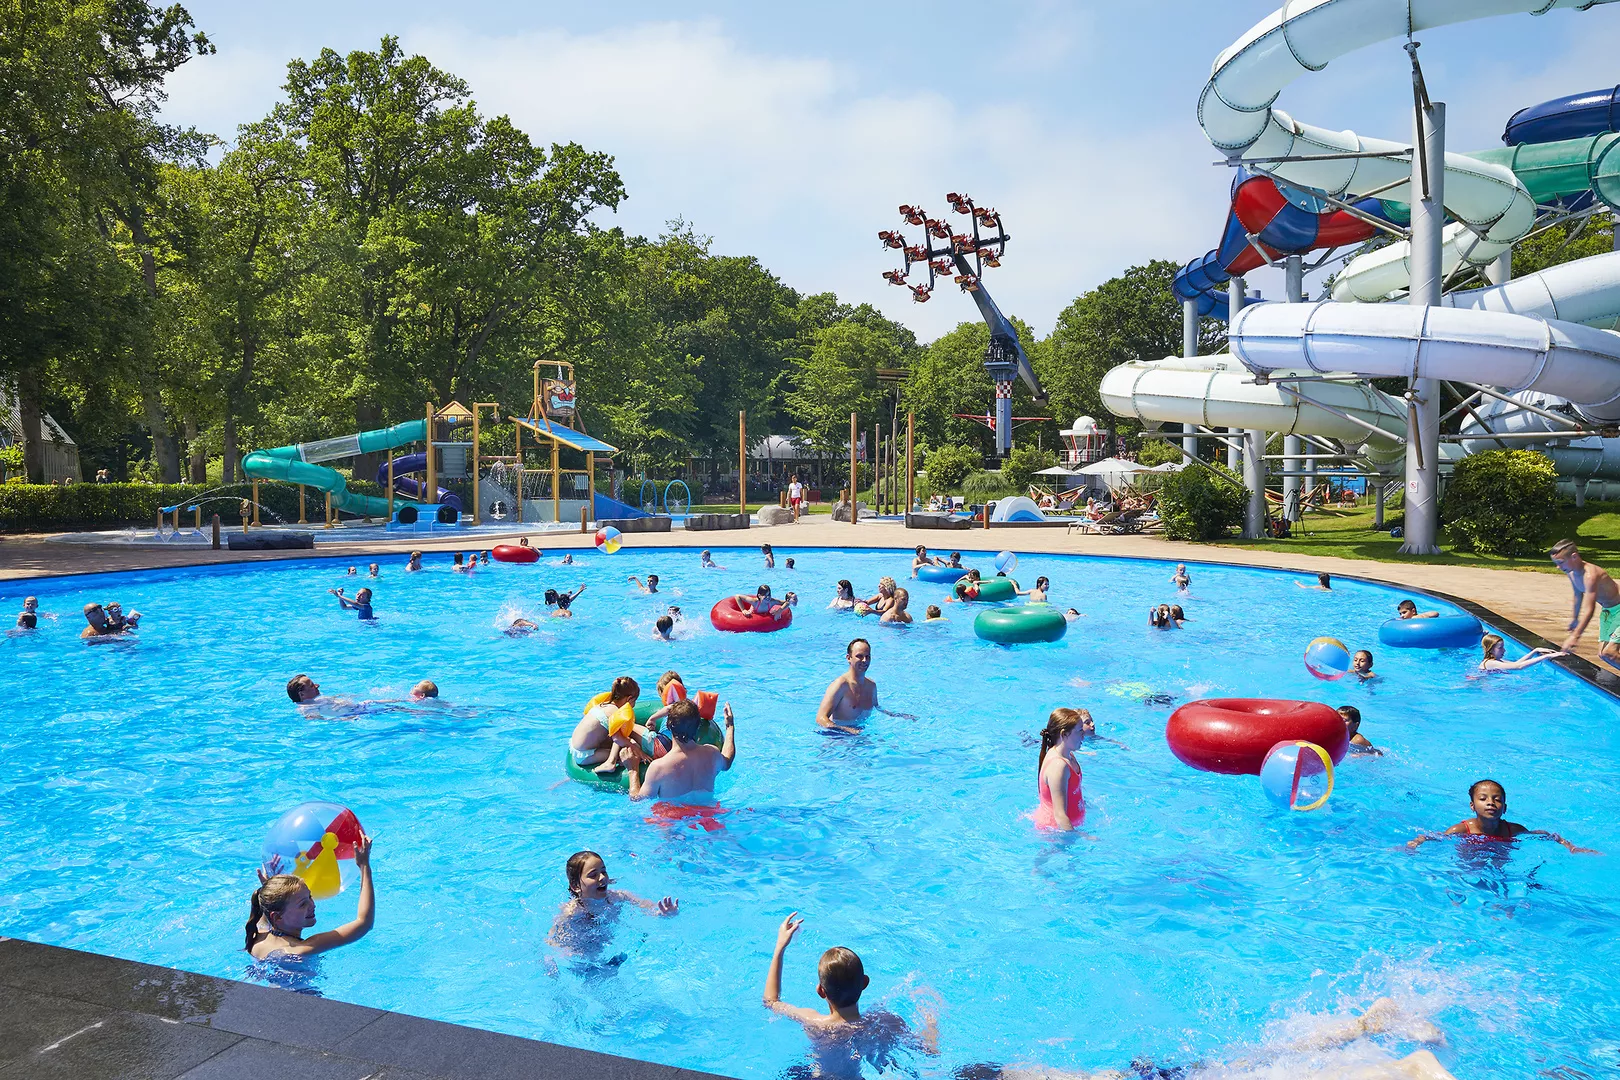 Buitenzwembad met kinderen, attractie en glijbanen op de achtergrond